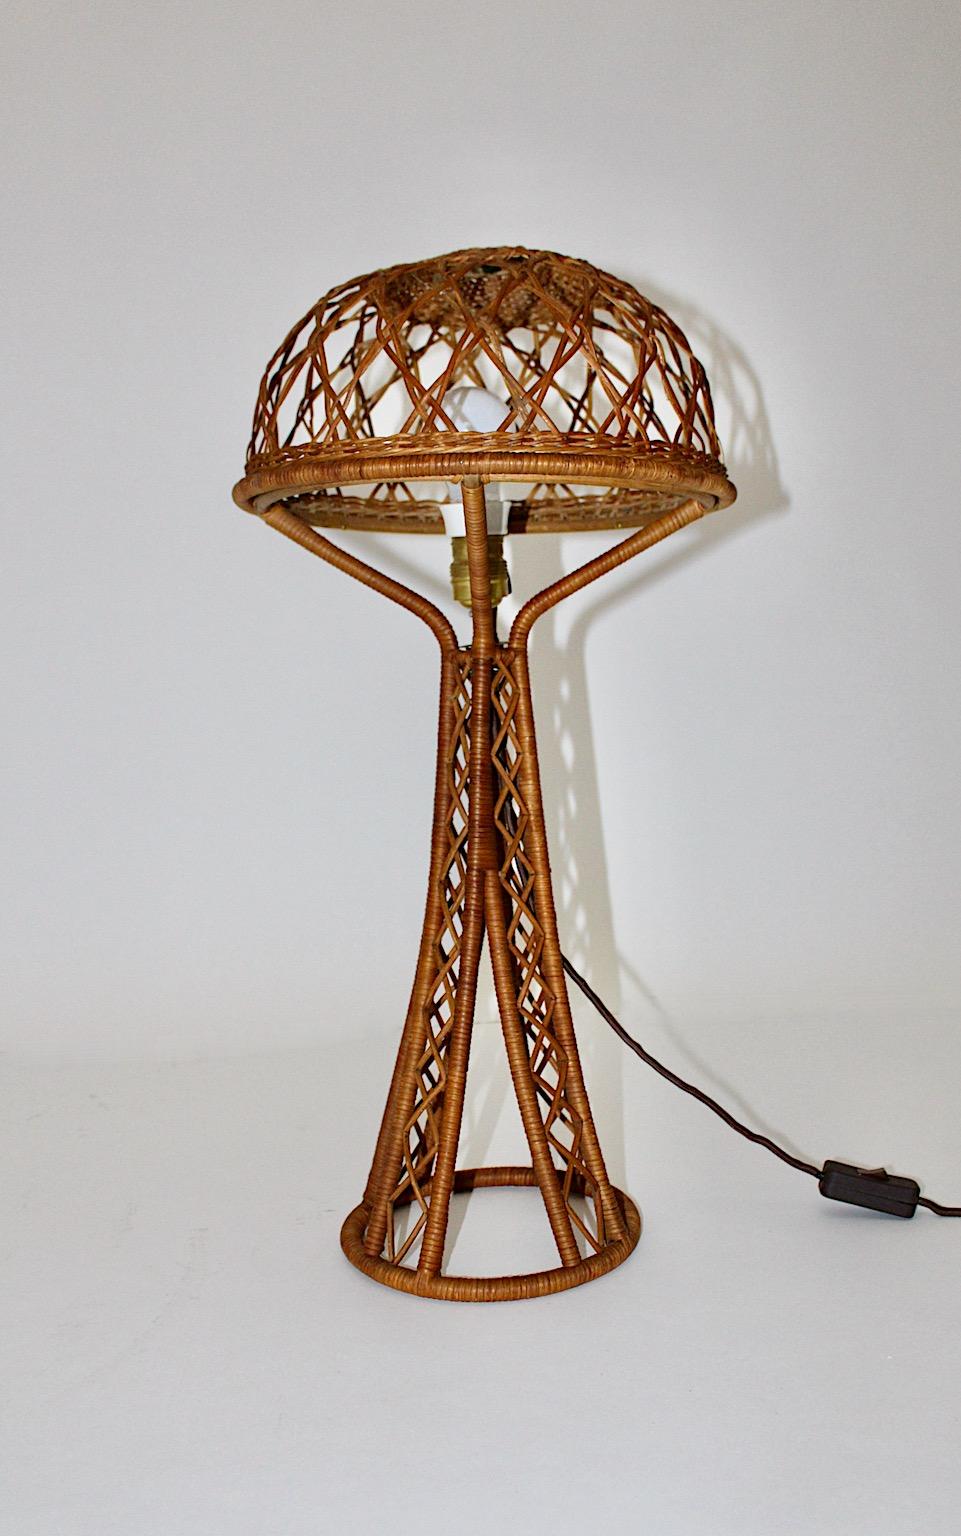 Moderne organische Mid-Century-Modern-Tischlampe Eiffel mit mushroom-artigem Schirm aus Rattan, 1950er Jahre.
Der zarte Lampenschirm aus Rattan weist ein zartes Rhodiummuster auf, während der Lampensockel eine Eiffel-ähnliche Form auf.
Die